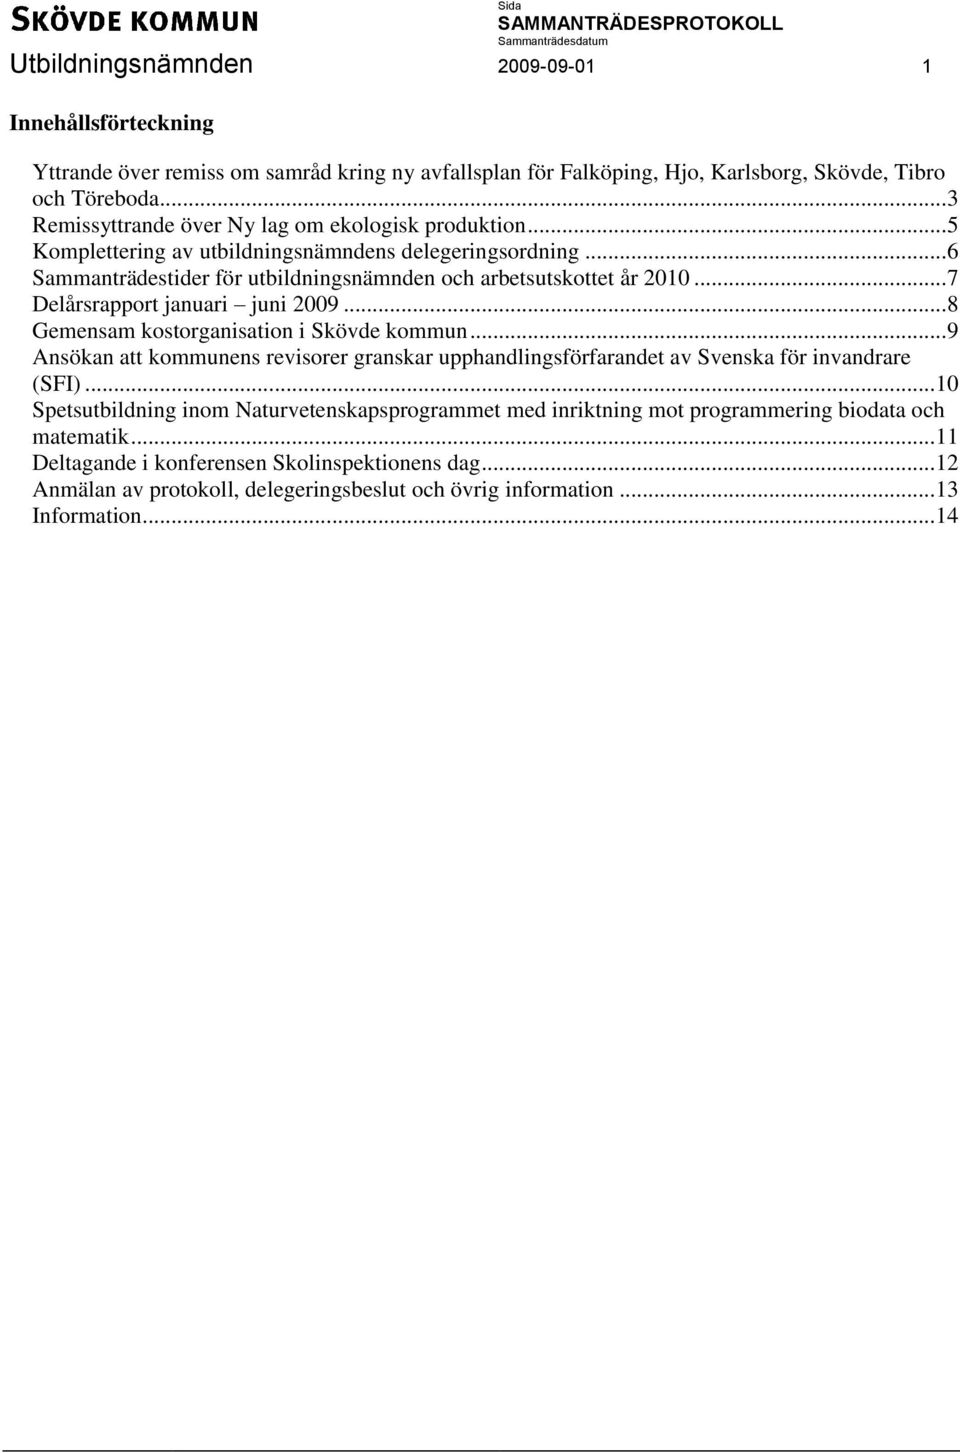 .. 7 Delårsrapport januari juni 2009... 8 Gemensam kostorganisation i Skövde kommun... 9 Ansökan att kommunens revisorer granskar upphandlingsförfarandet av Svenska för invandrare (SFI).